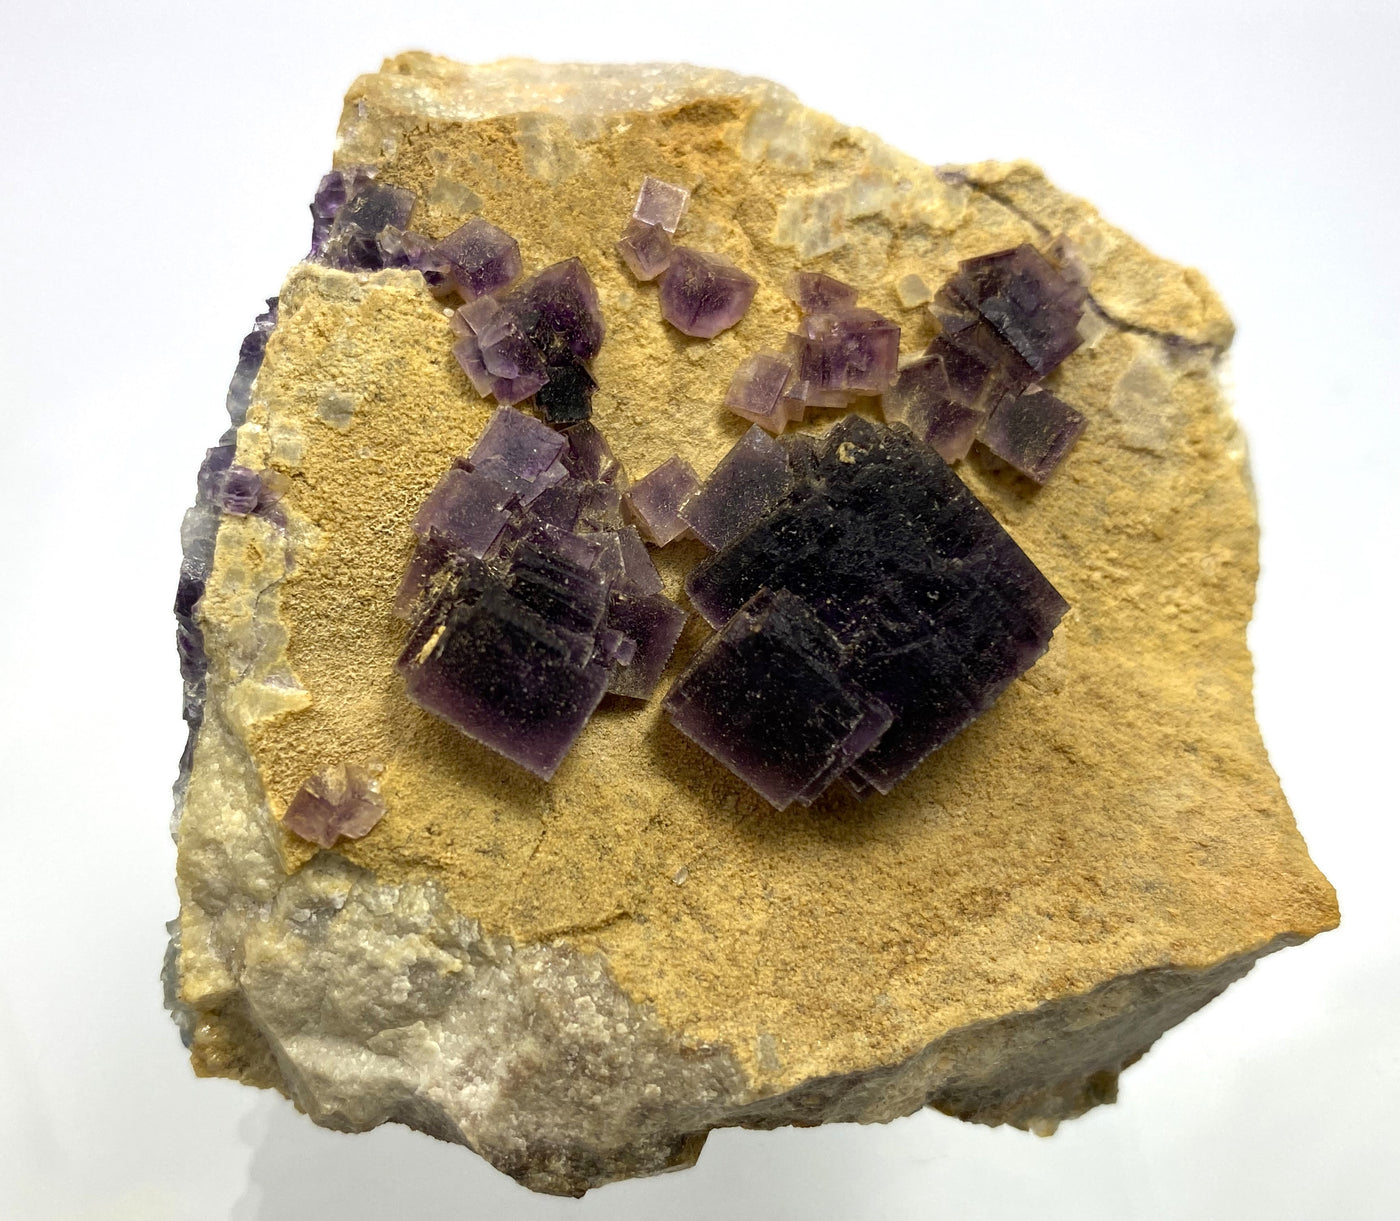 Fluorite on dolomite, Weisseck, Lungau, Austria